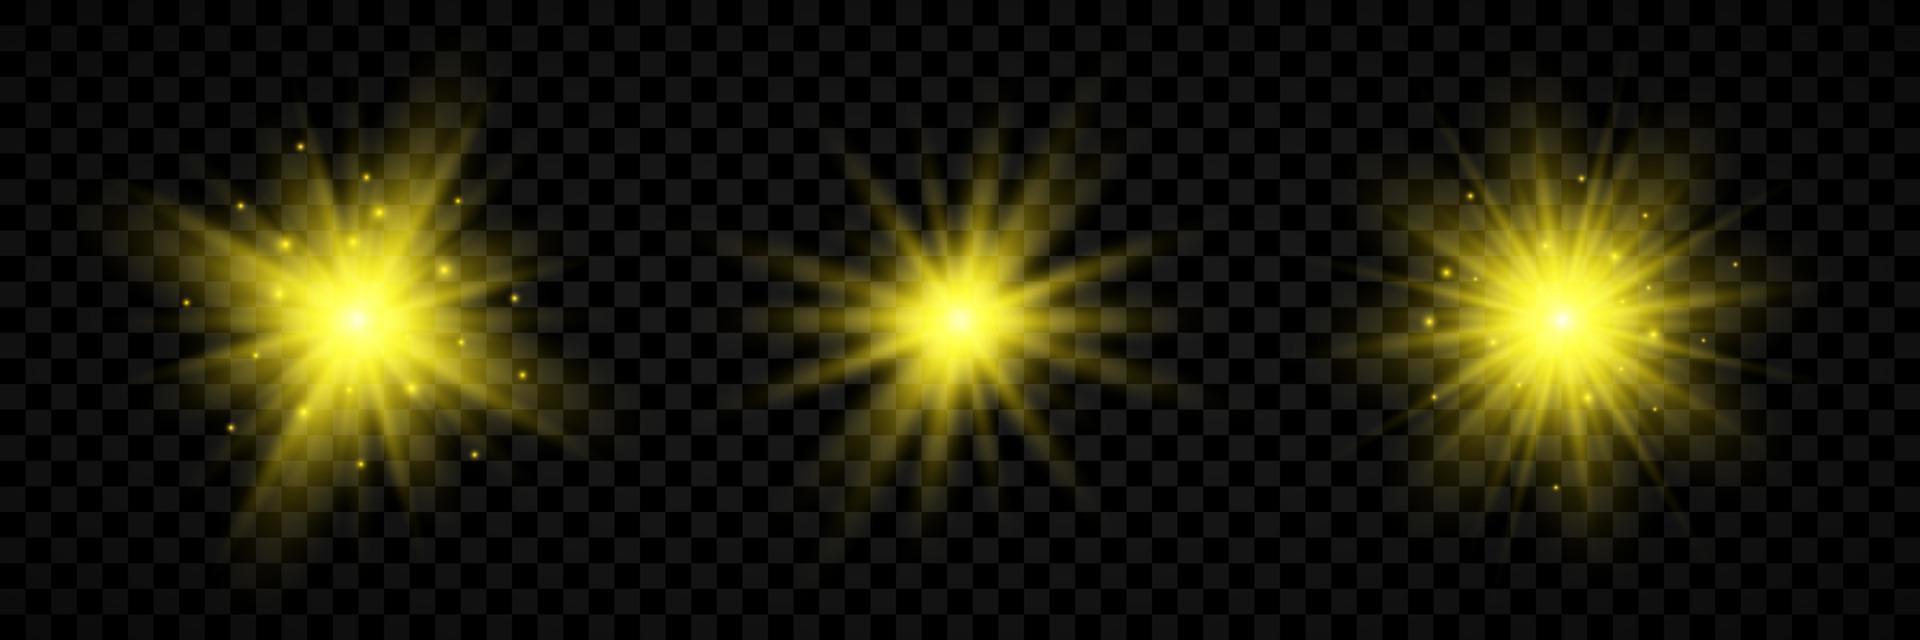 luz efeito do lente chamas. conjunto do três amarelo brilhando luzes starburst efeitos com brilhos vetor